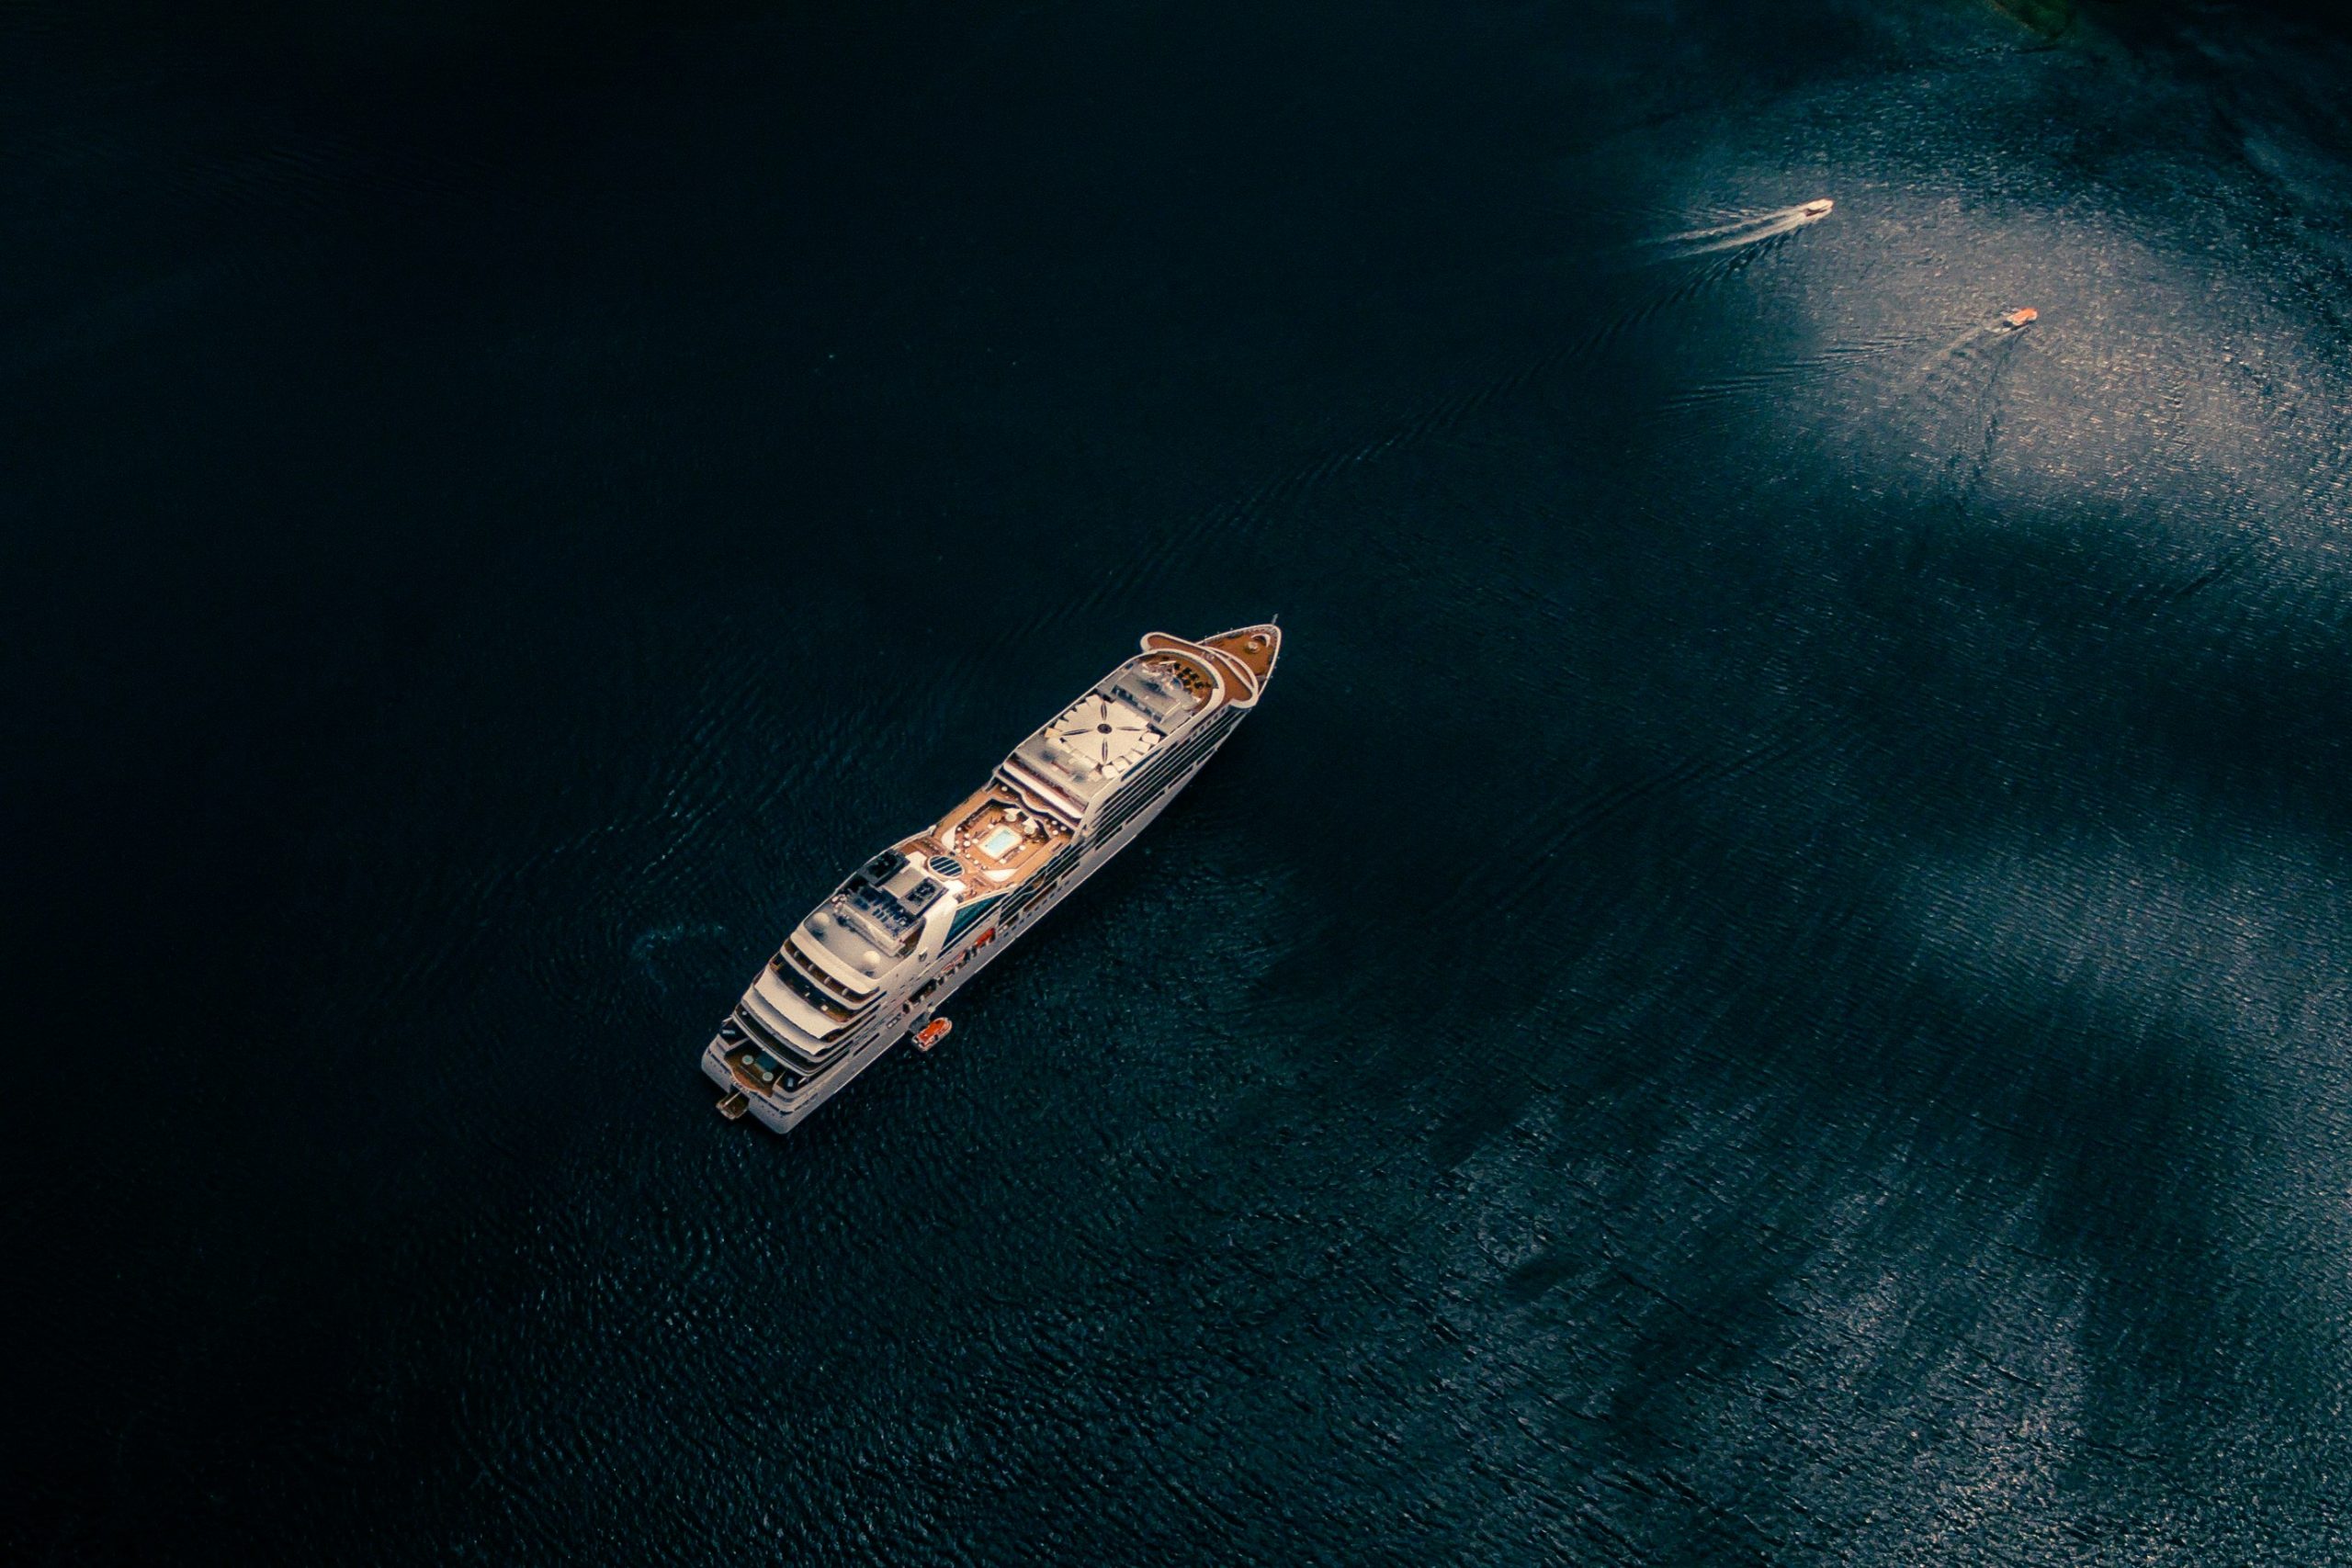 découvrez les meilleures offres de croisières pour des vacances inoubliables avec cruise. profitez d'expériences de voyage exceptionnelles à bord de navires de luxe, et explorez des destinations exotiques et captivantes.